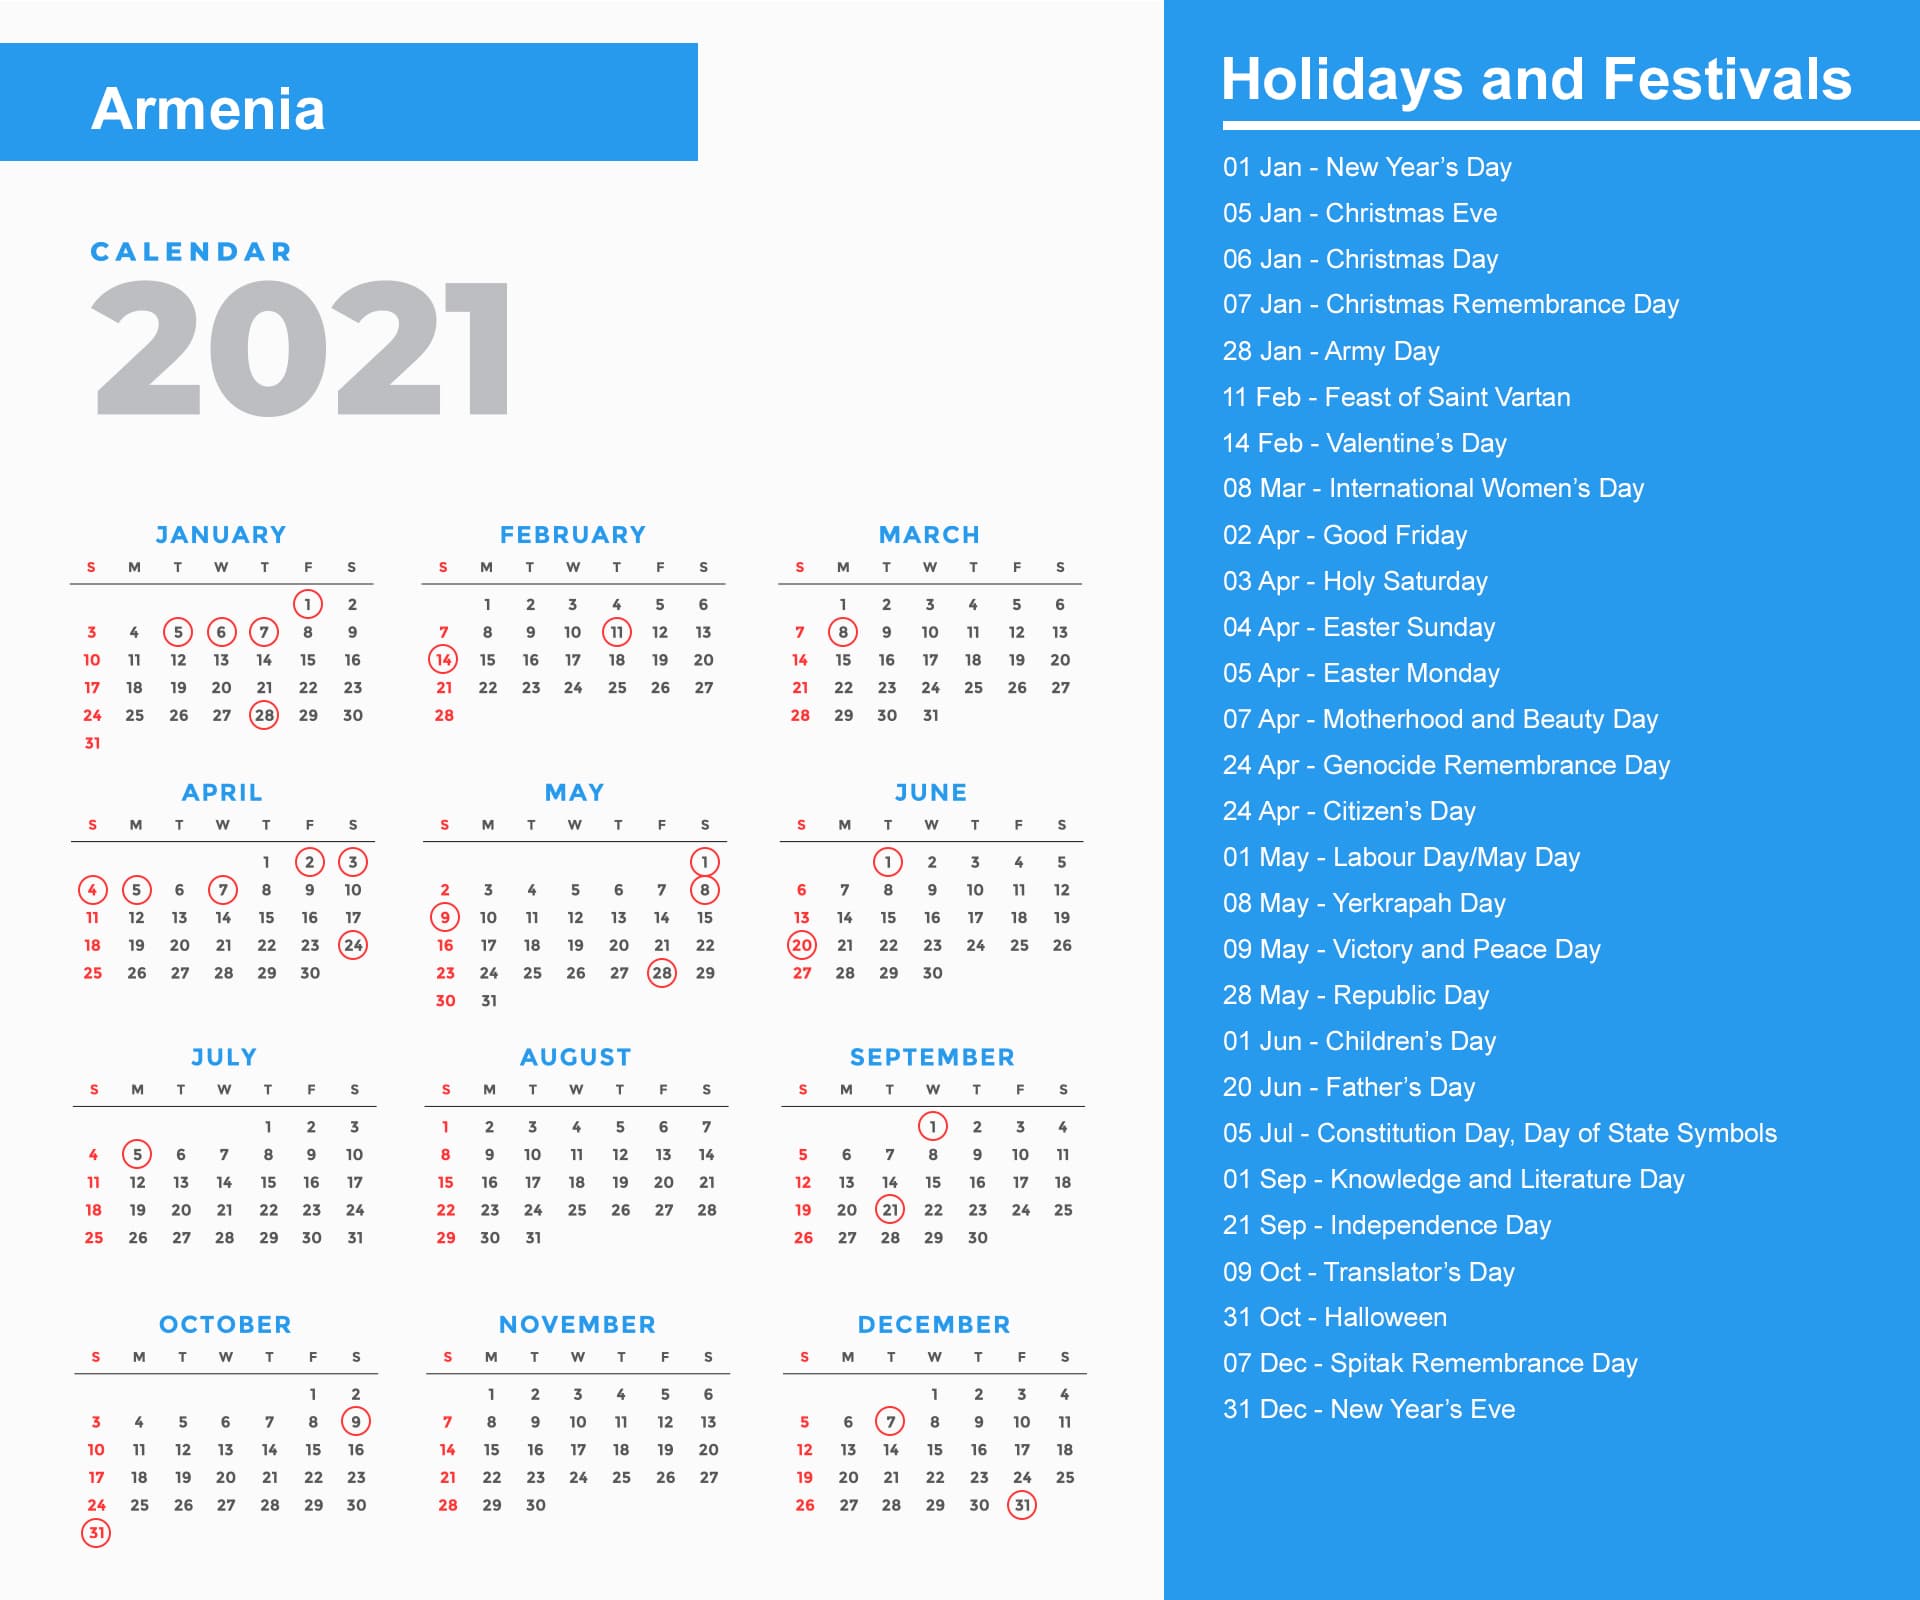 Armenia Holidays Calendar 2021